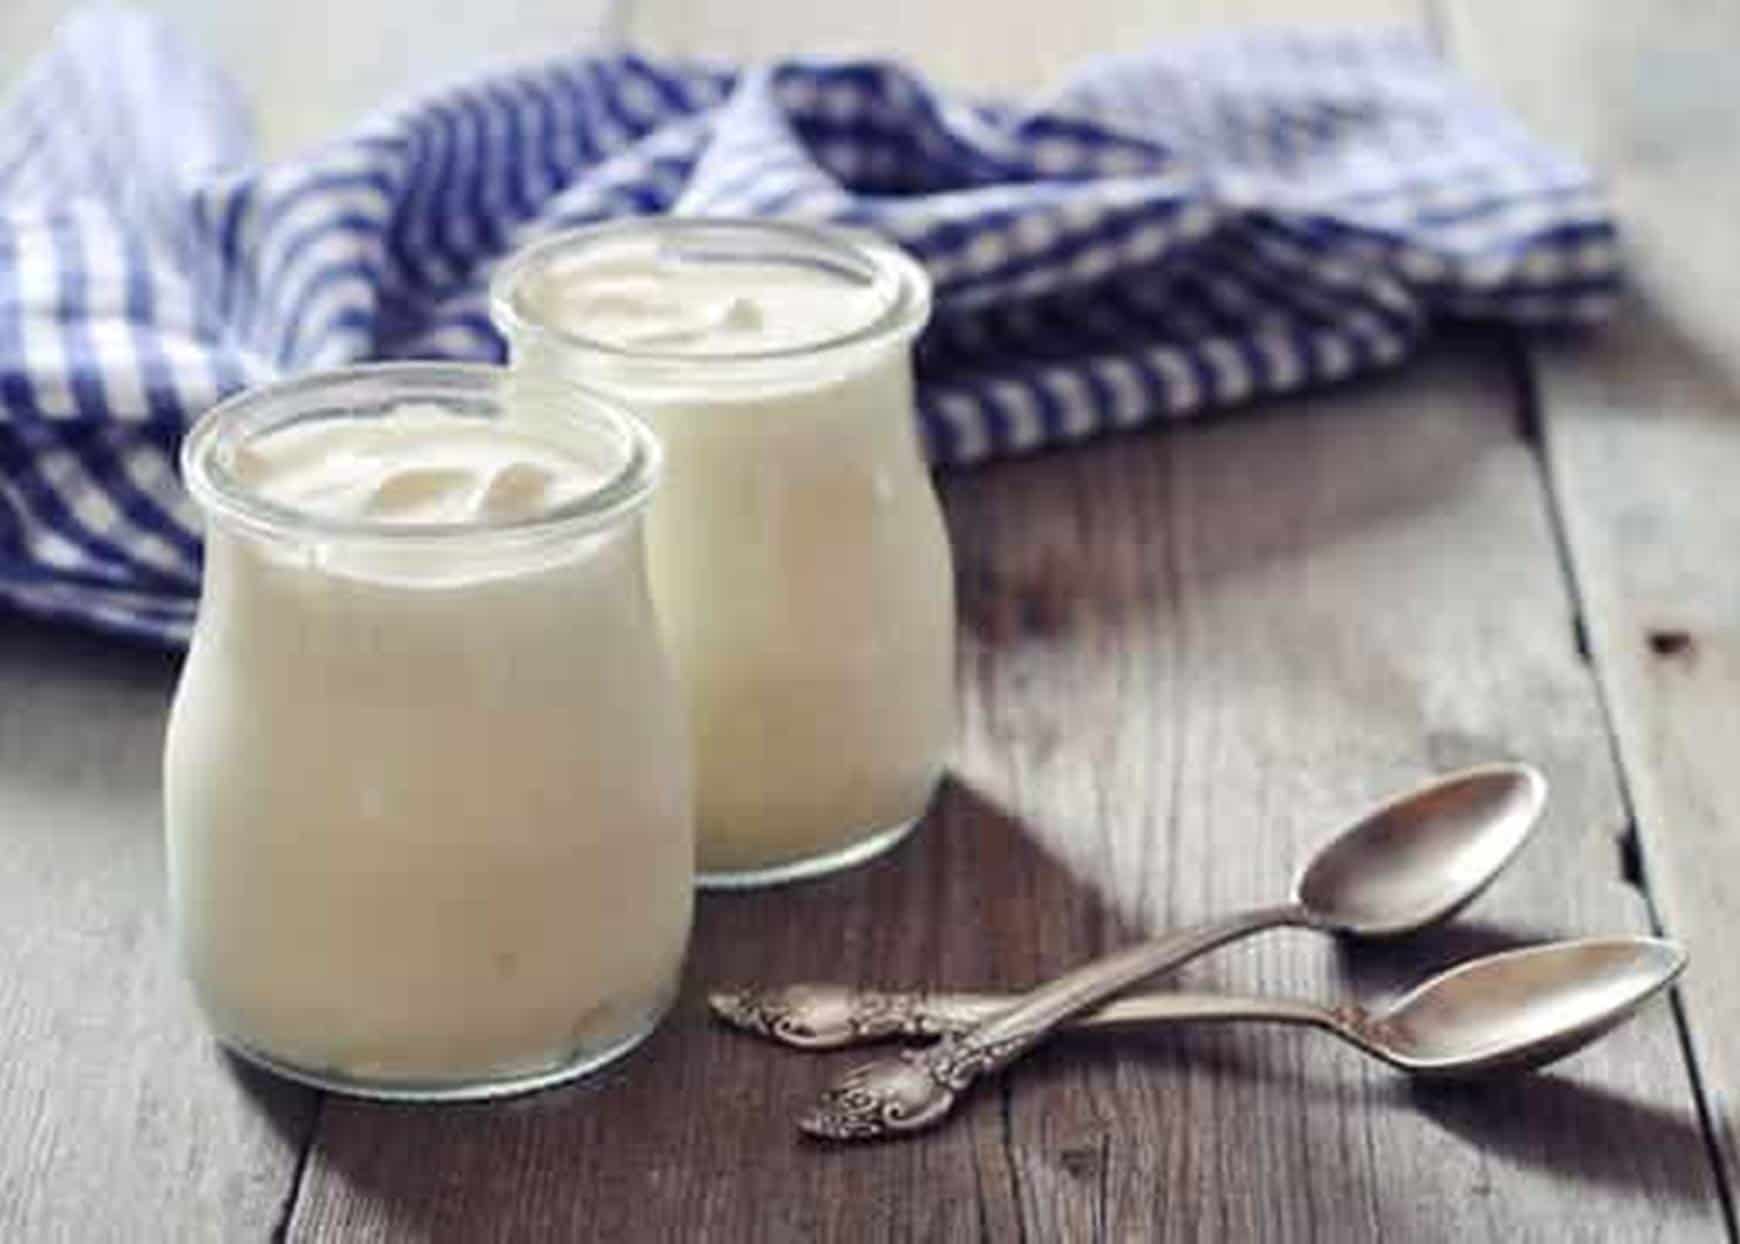 Aprenda a fazer este iogurte caseiro fácil e nutritivo com apenas dois ingredientes